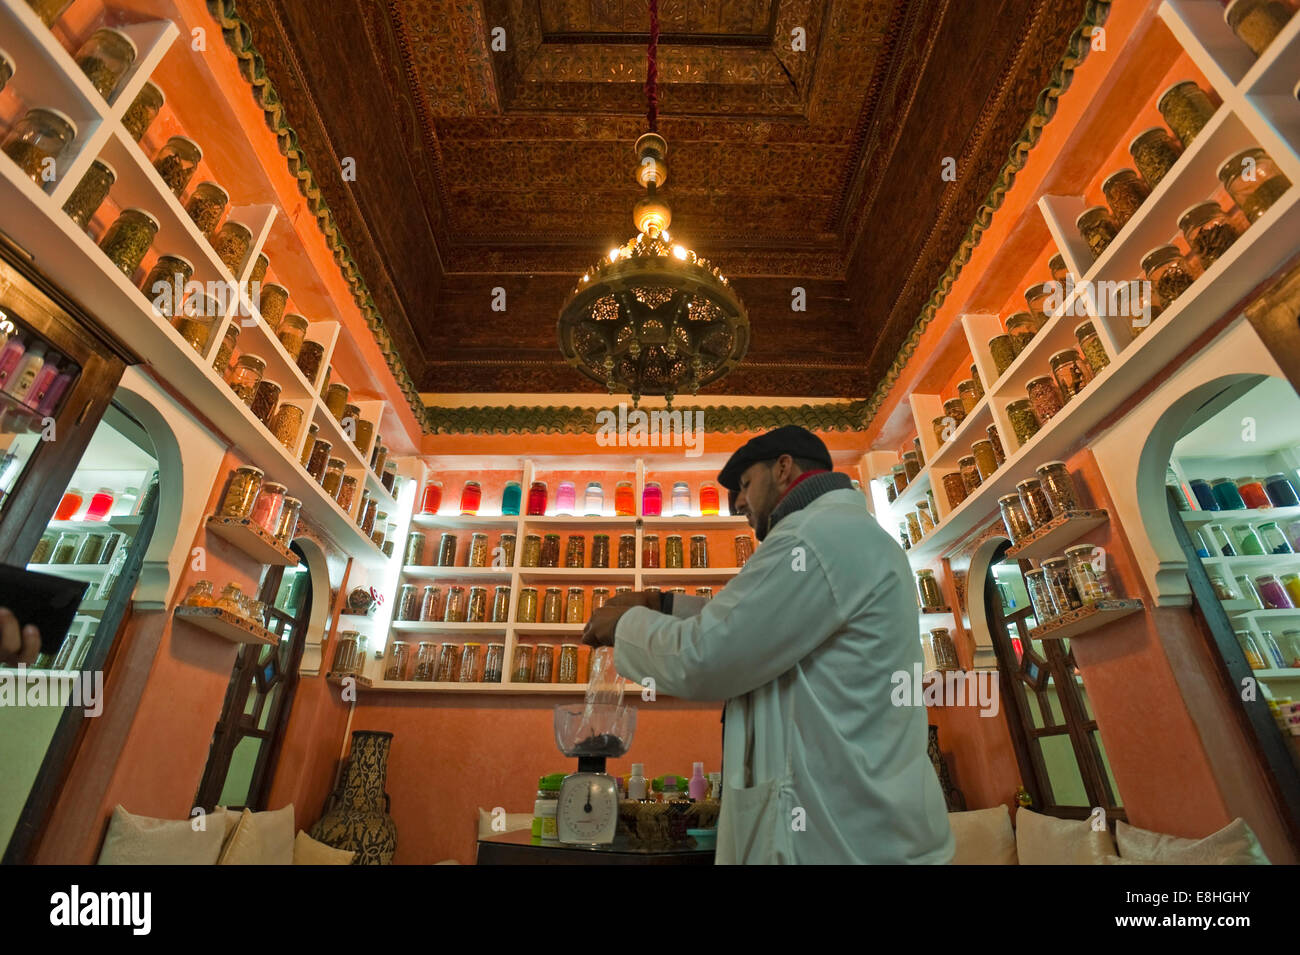 Vue intérieure d'un horizontal, l'apothicaire chimiste berbère aka, magasiner dans les souks de Marrakech. Banque D'Images